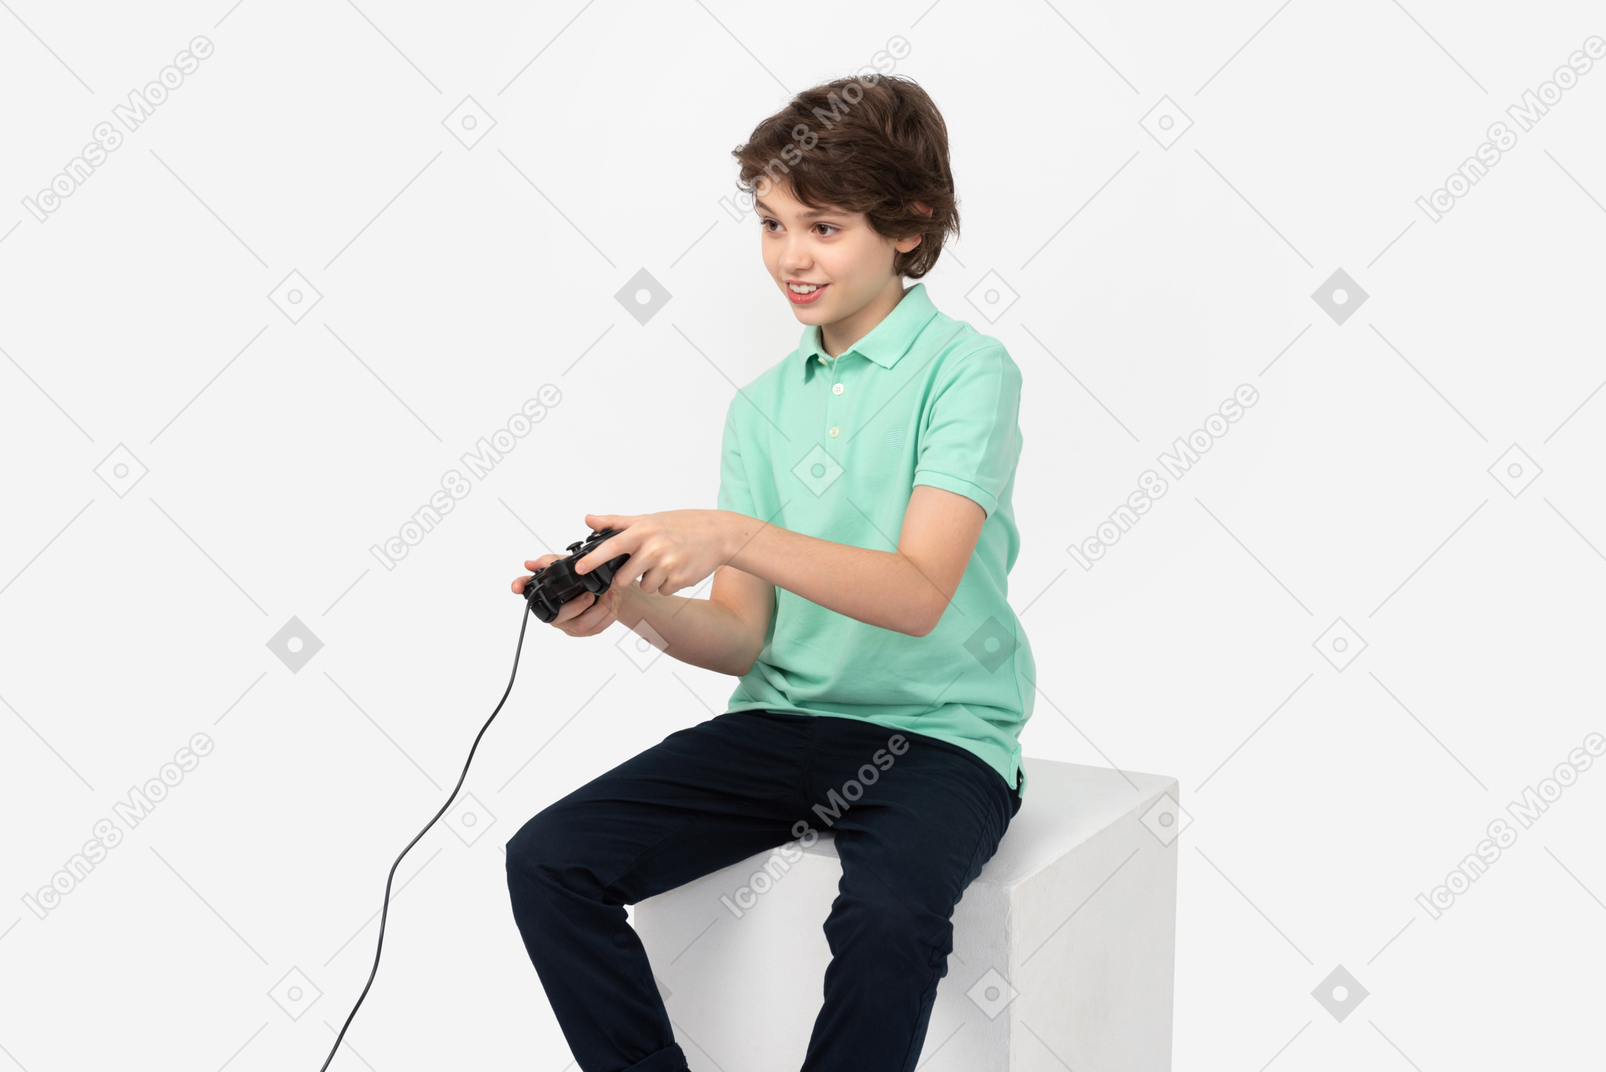 Adolescent, jouer à des jeux vidéo